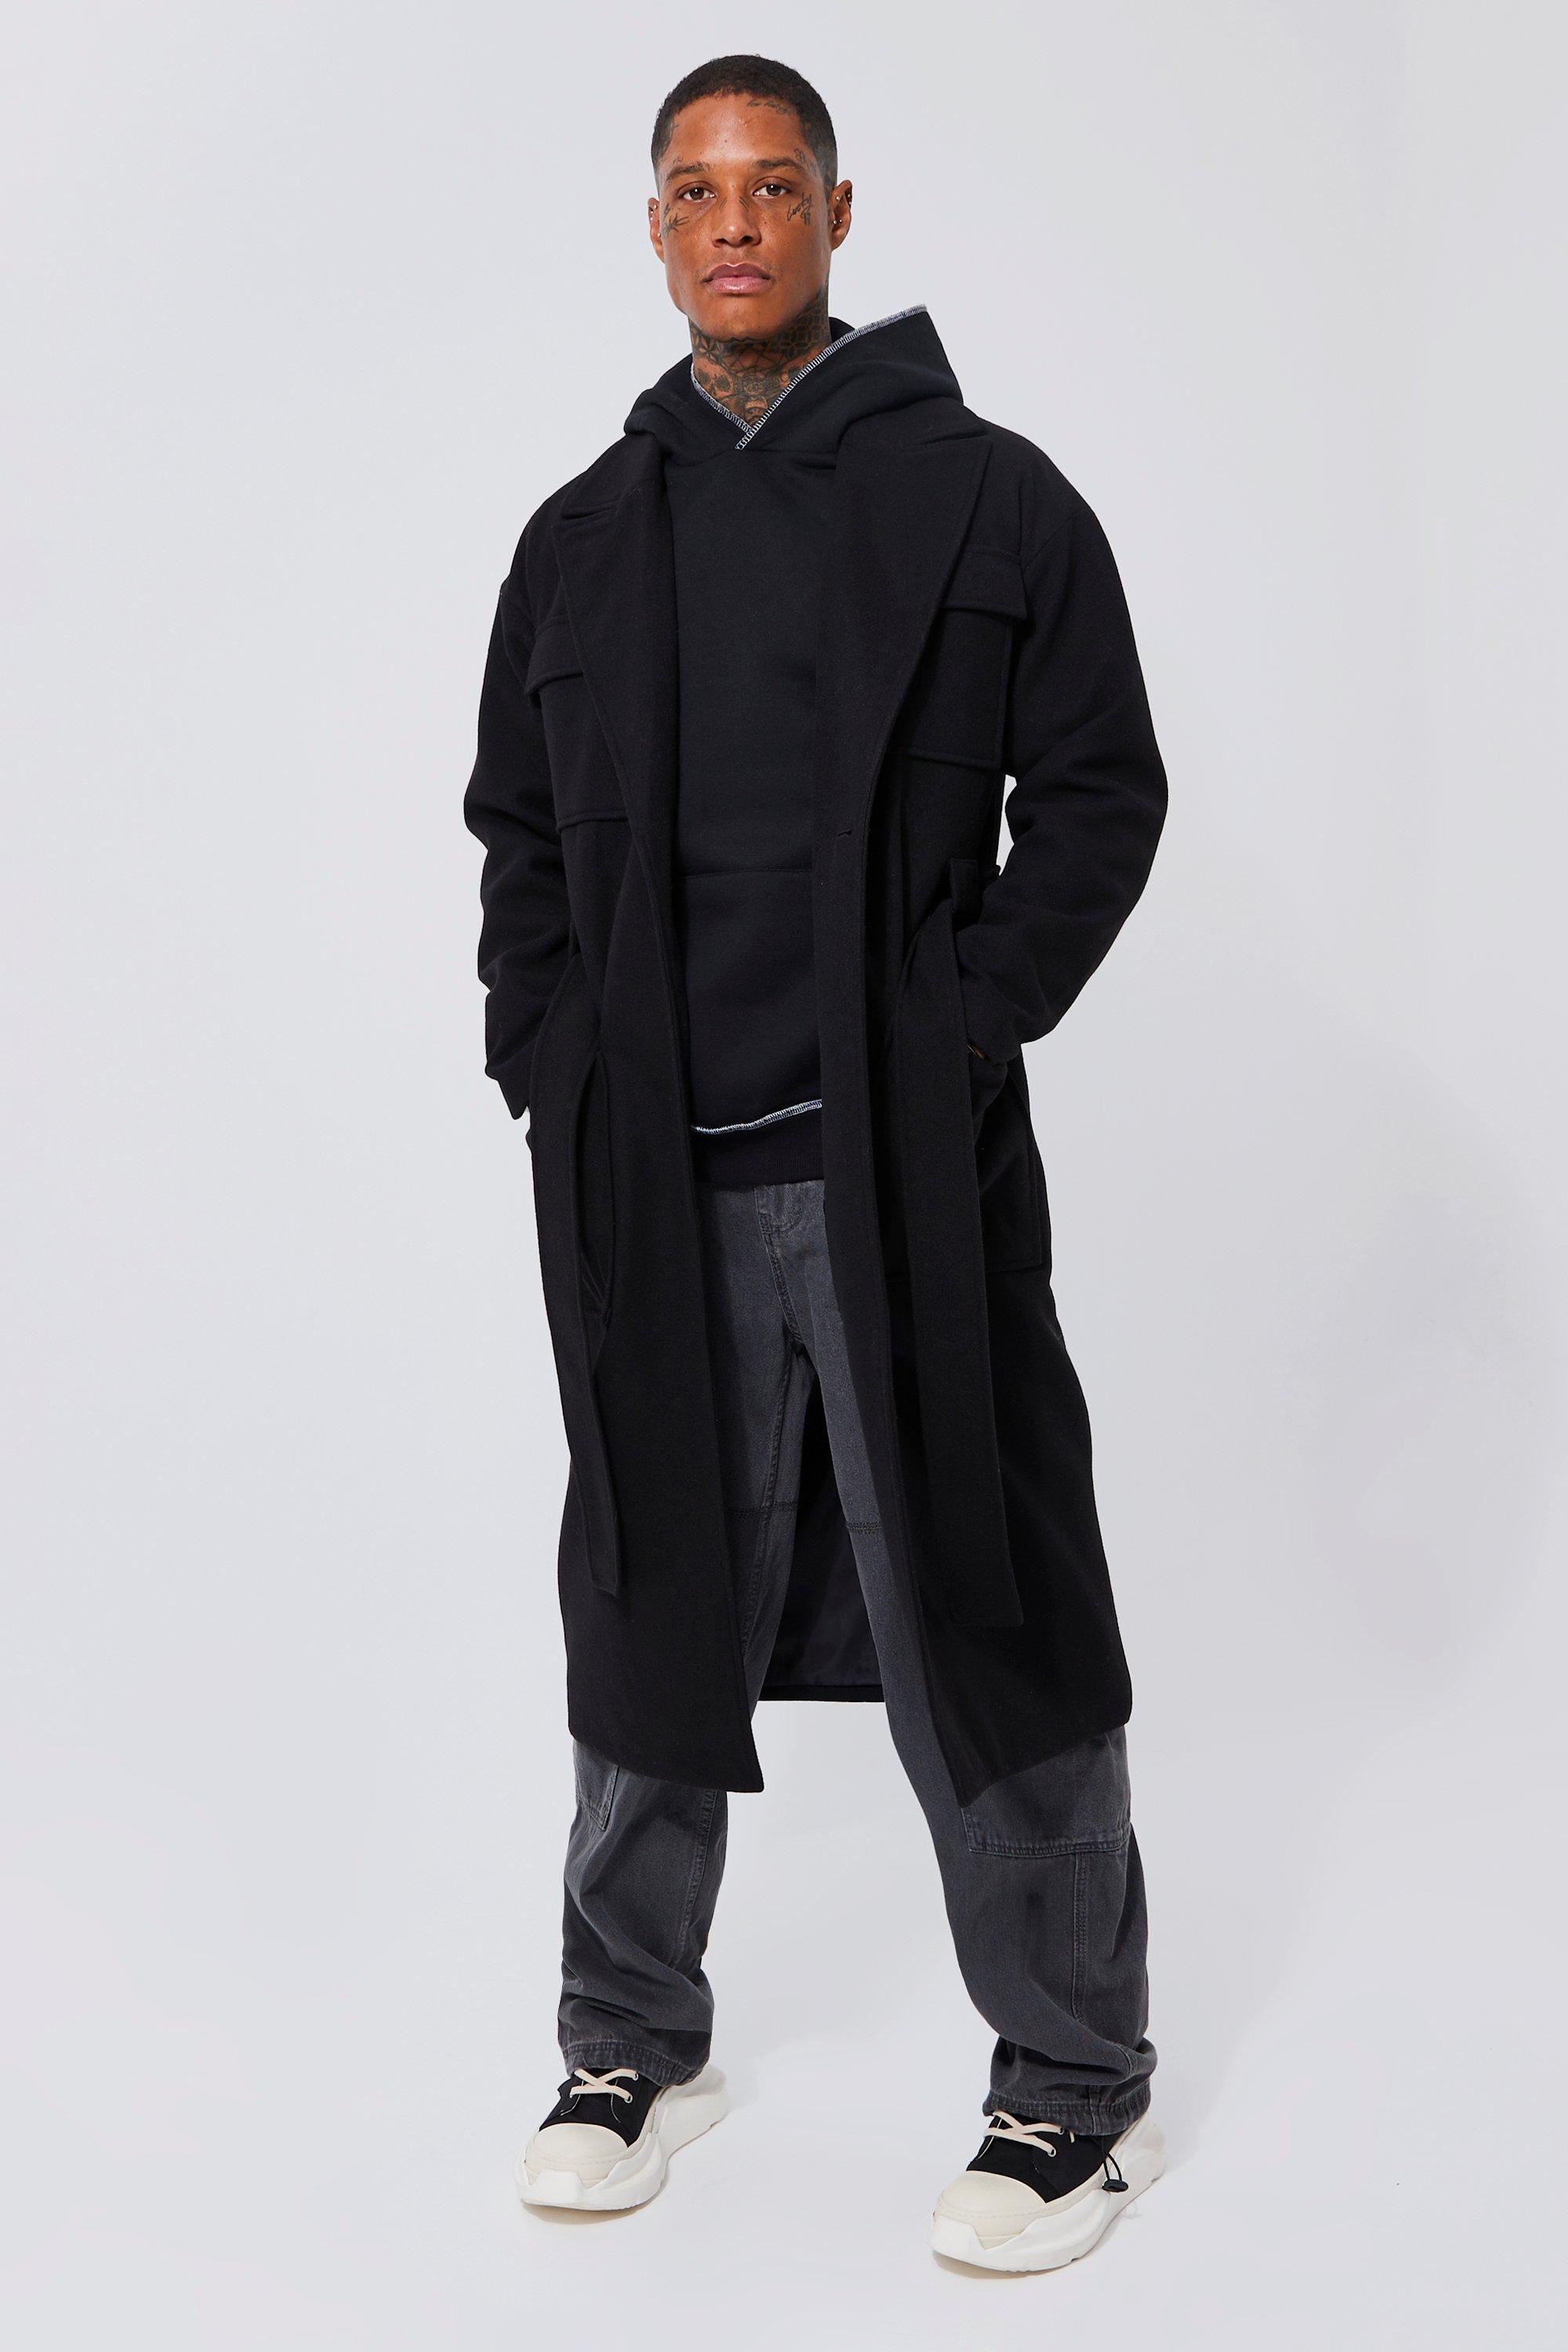 Langer Mantel Mit 4 Taschen Und Gürtel - Black - M, Black